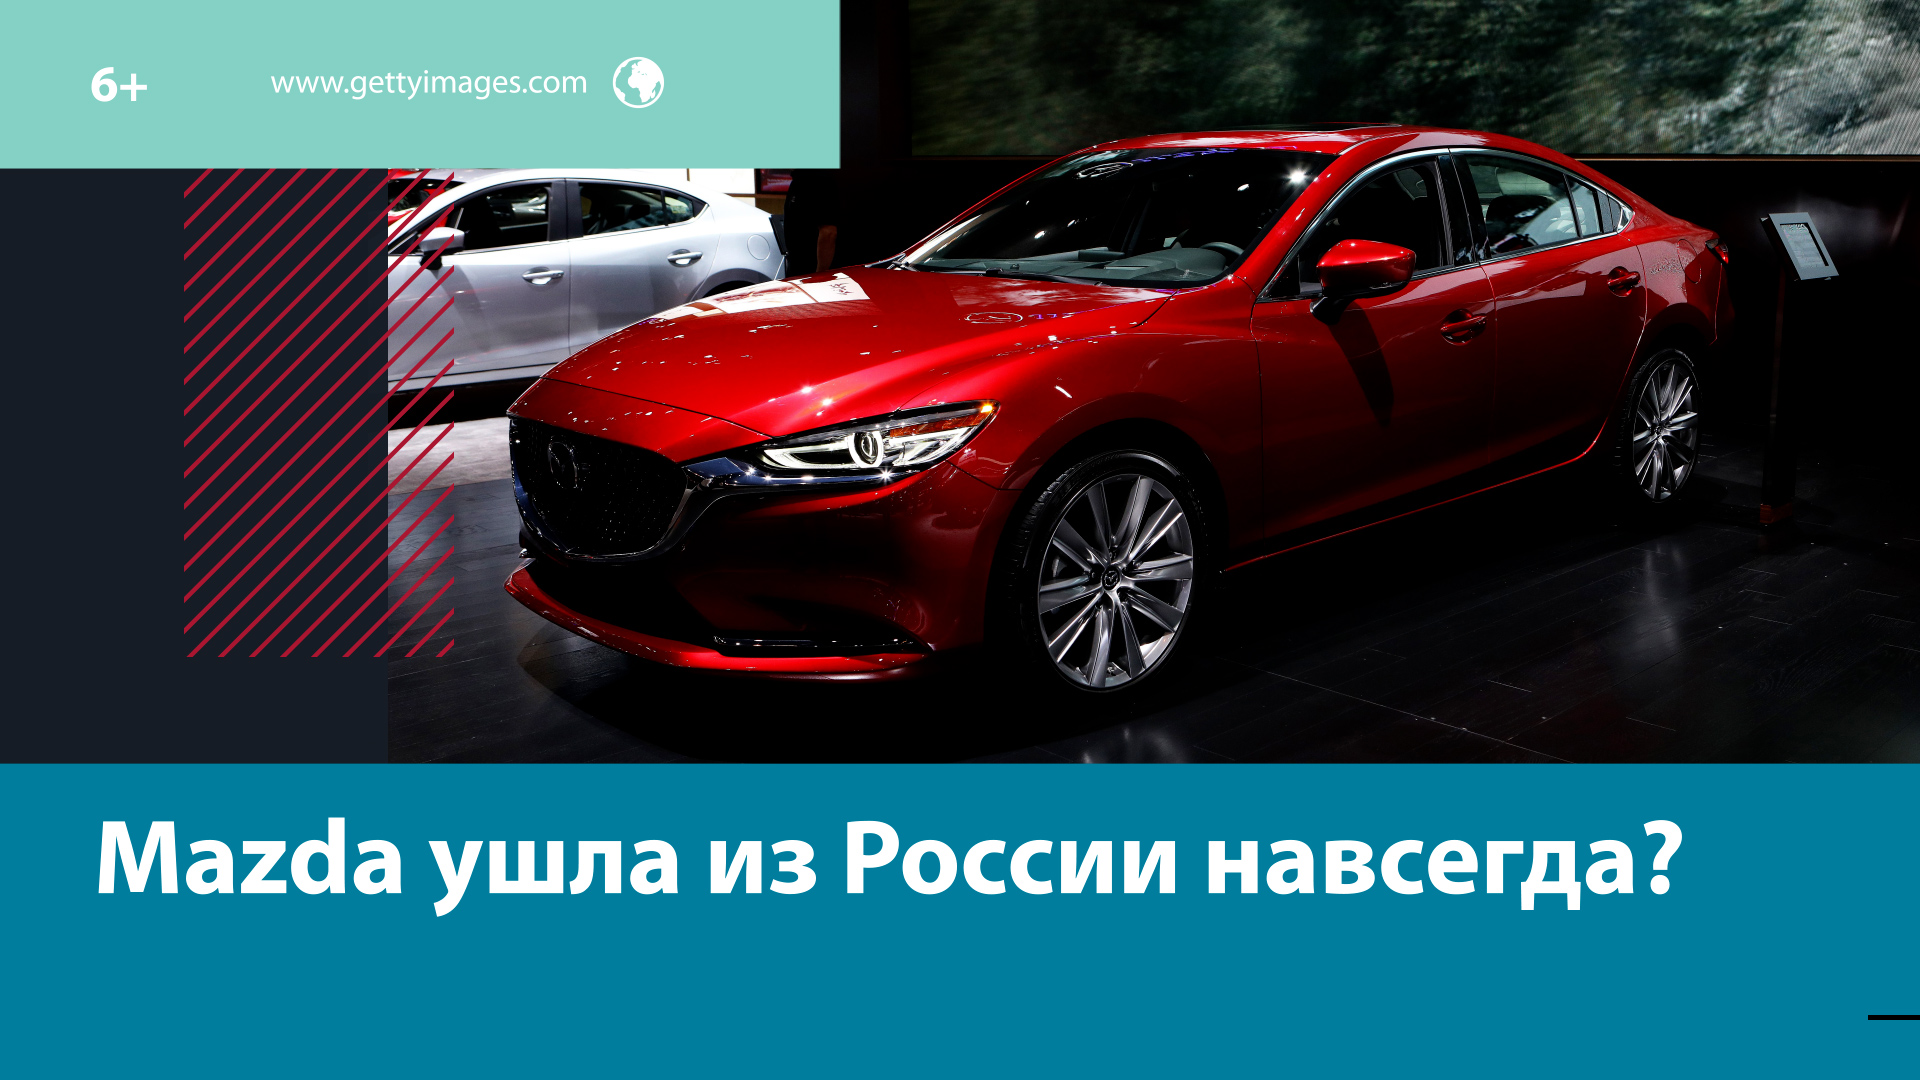 Как быть владельцам Mazda после ухода компании? – Москва FM